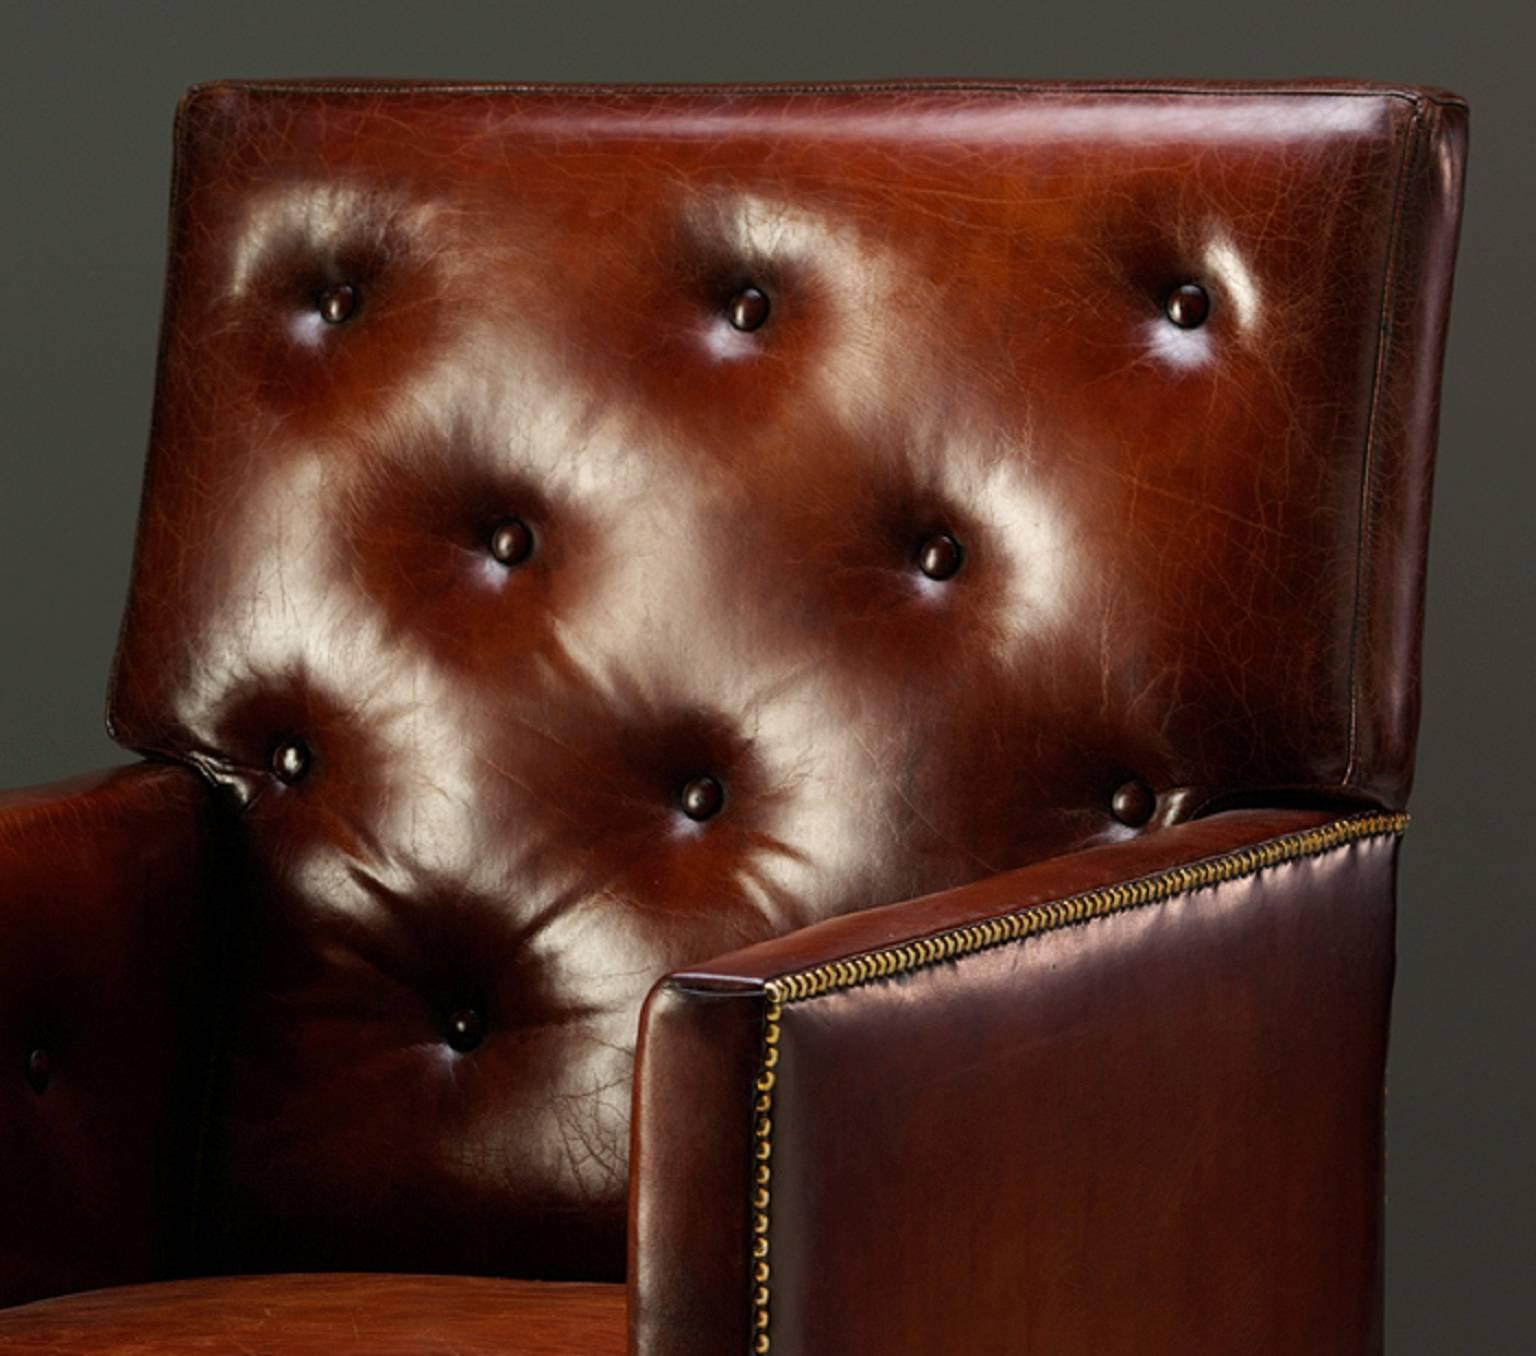 Une élégante chaise de bibliothèque en acajou de style George III, avec des roulettes en laiton. 

Le prix indiqué est pour une chaise tapissée dans le matériel du client. 

Représenté tapissé en cuir vieilli et teint à la main, ce qui coûterait 1